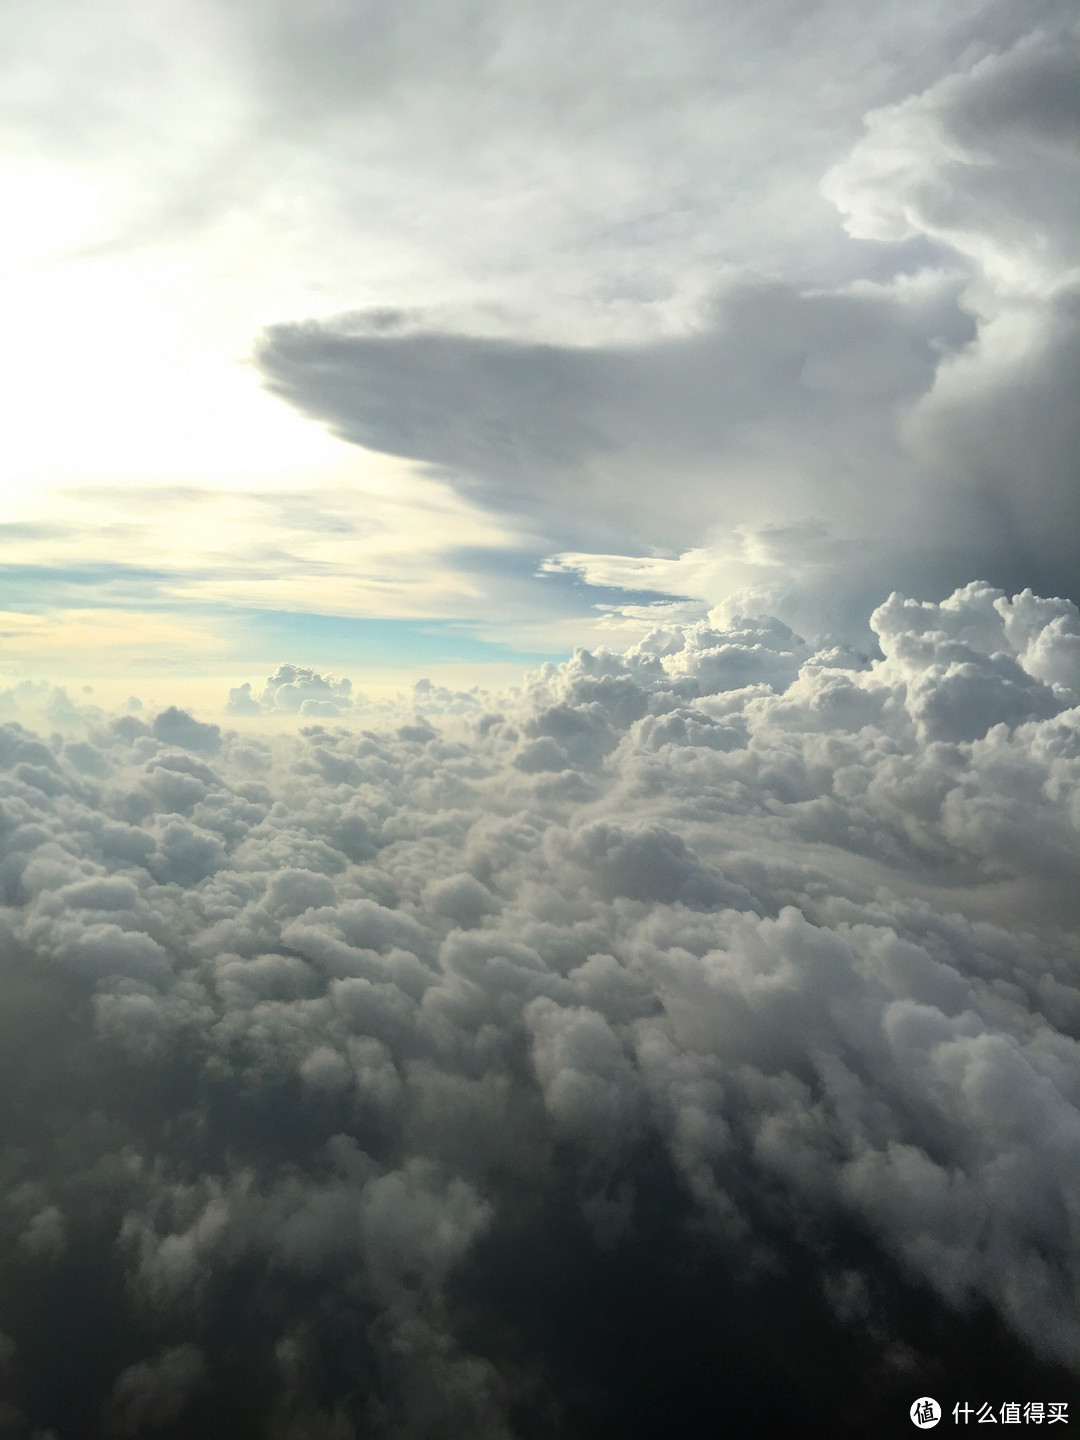 飞机起飞的时候云是这样的